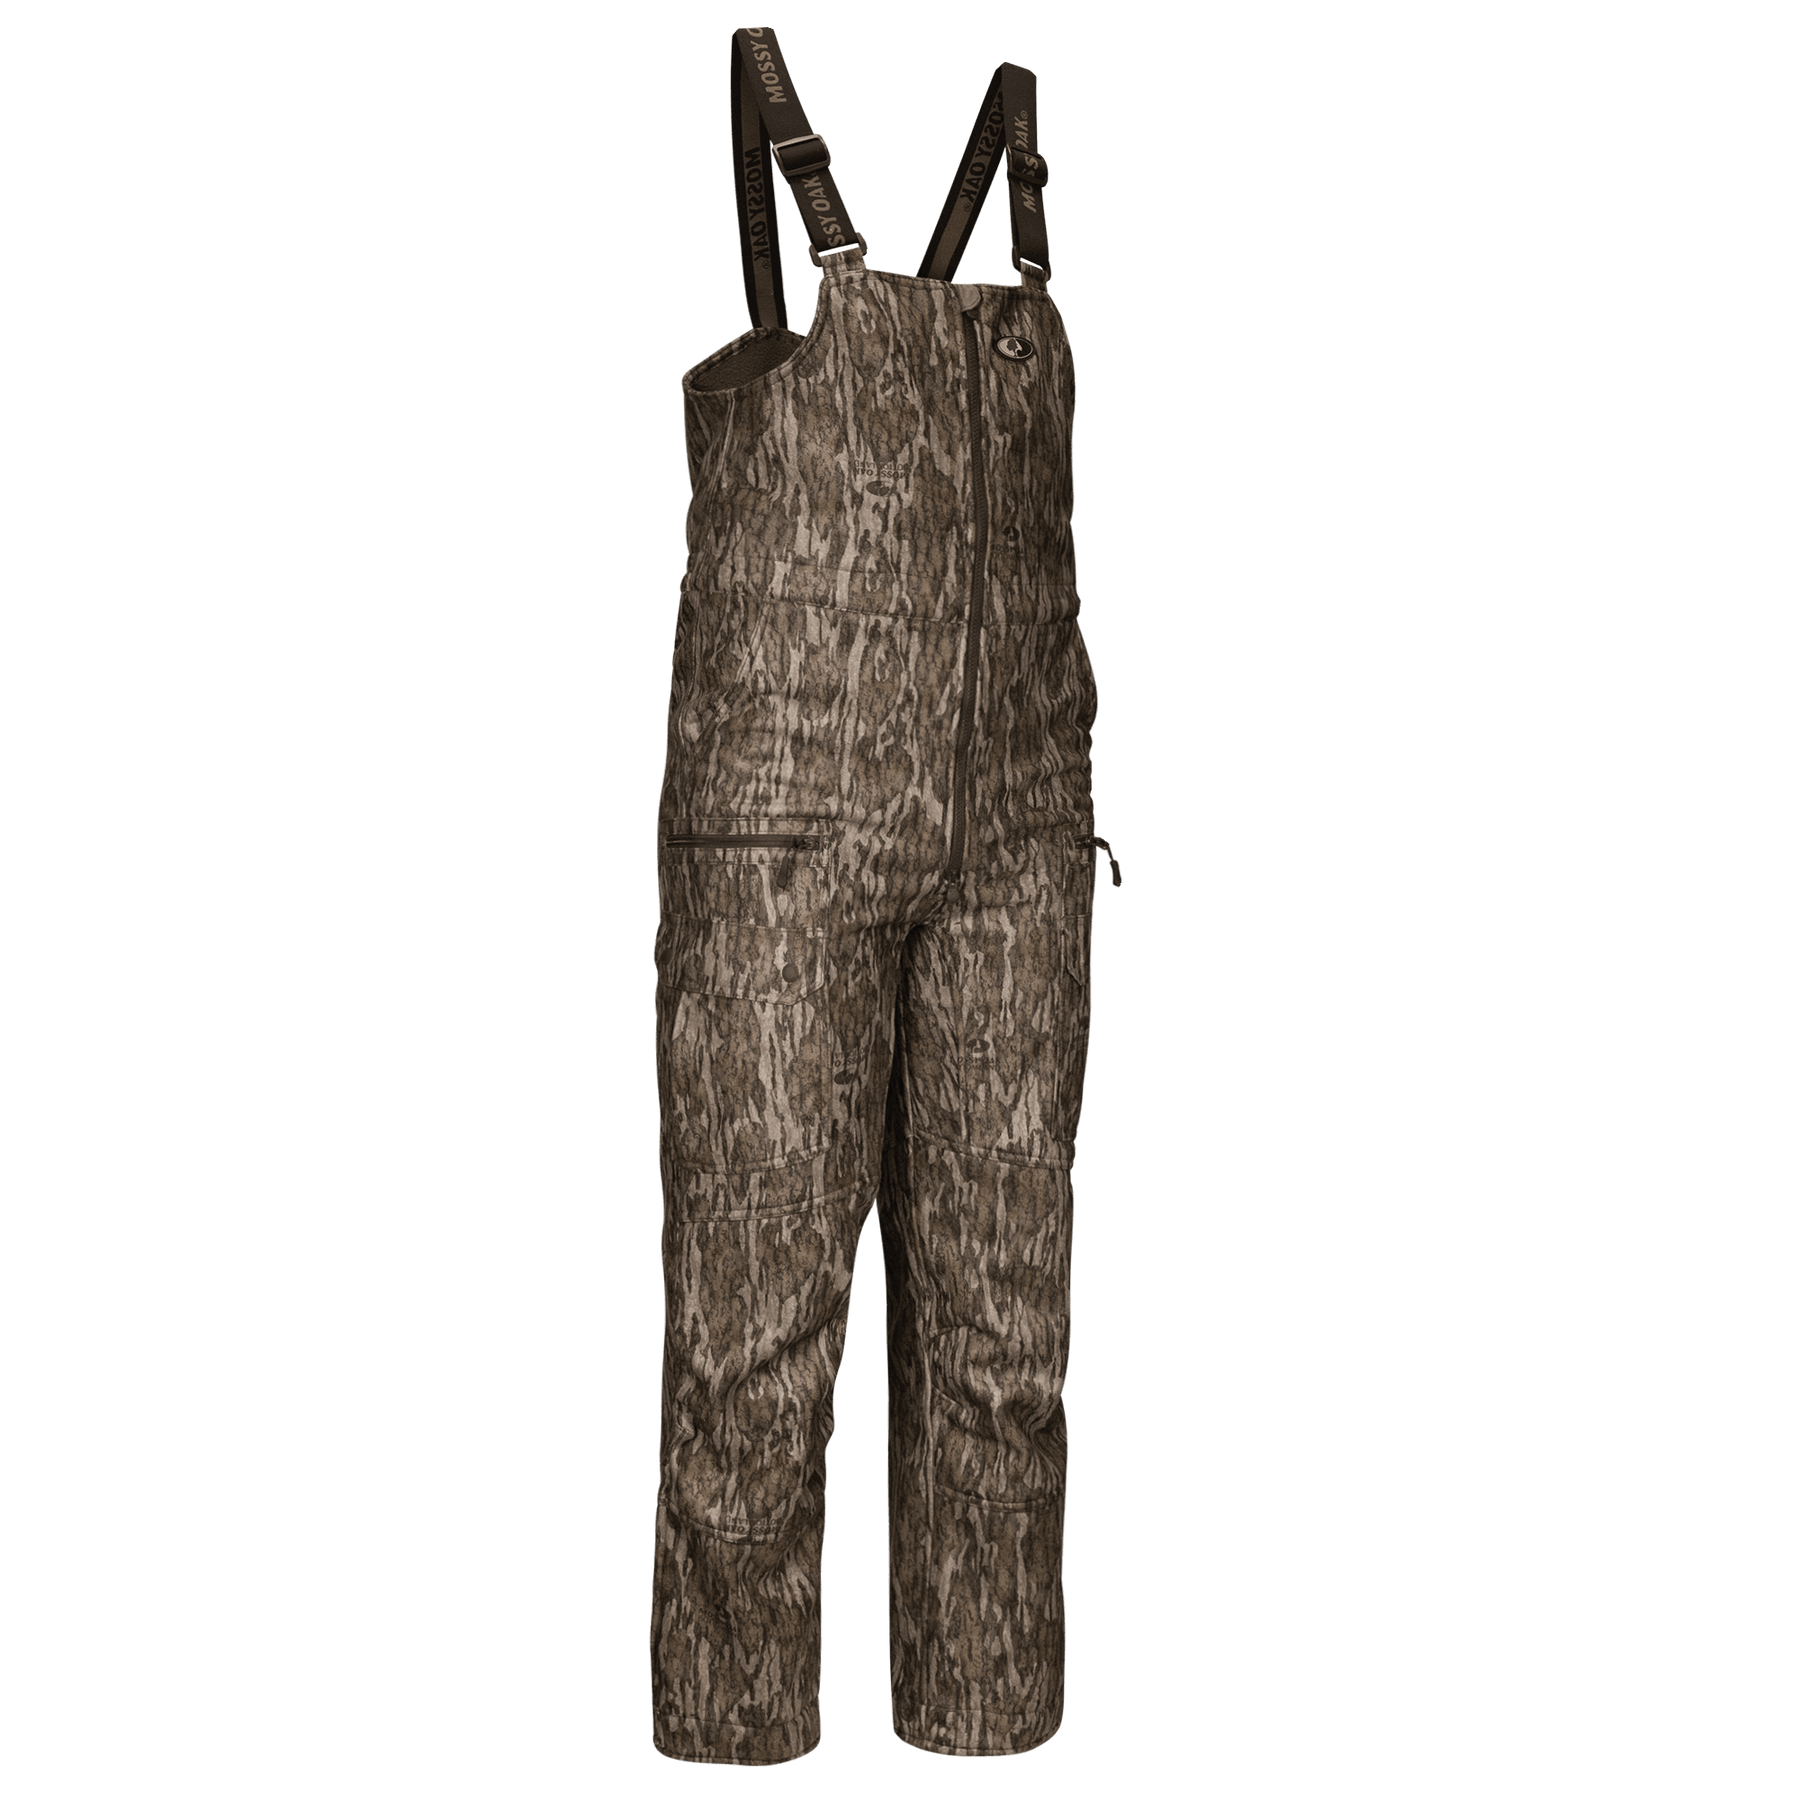 Mossy Oak Sherpa 2.0 Lined Bib Overalls – The Mossy Oak Store